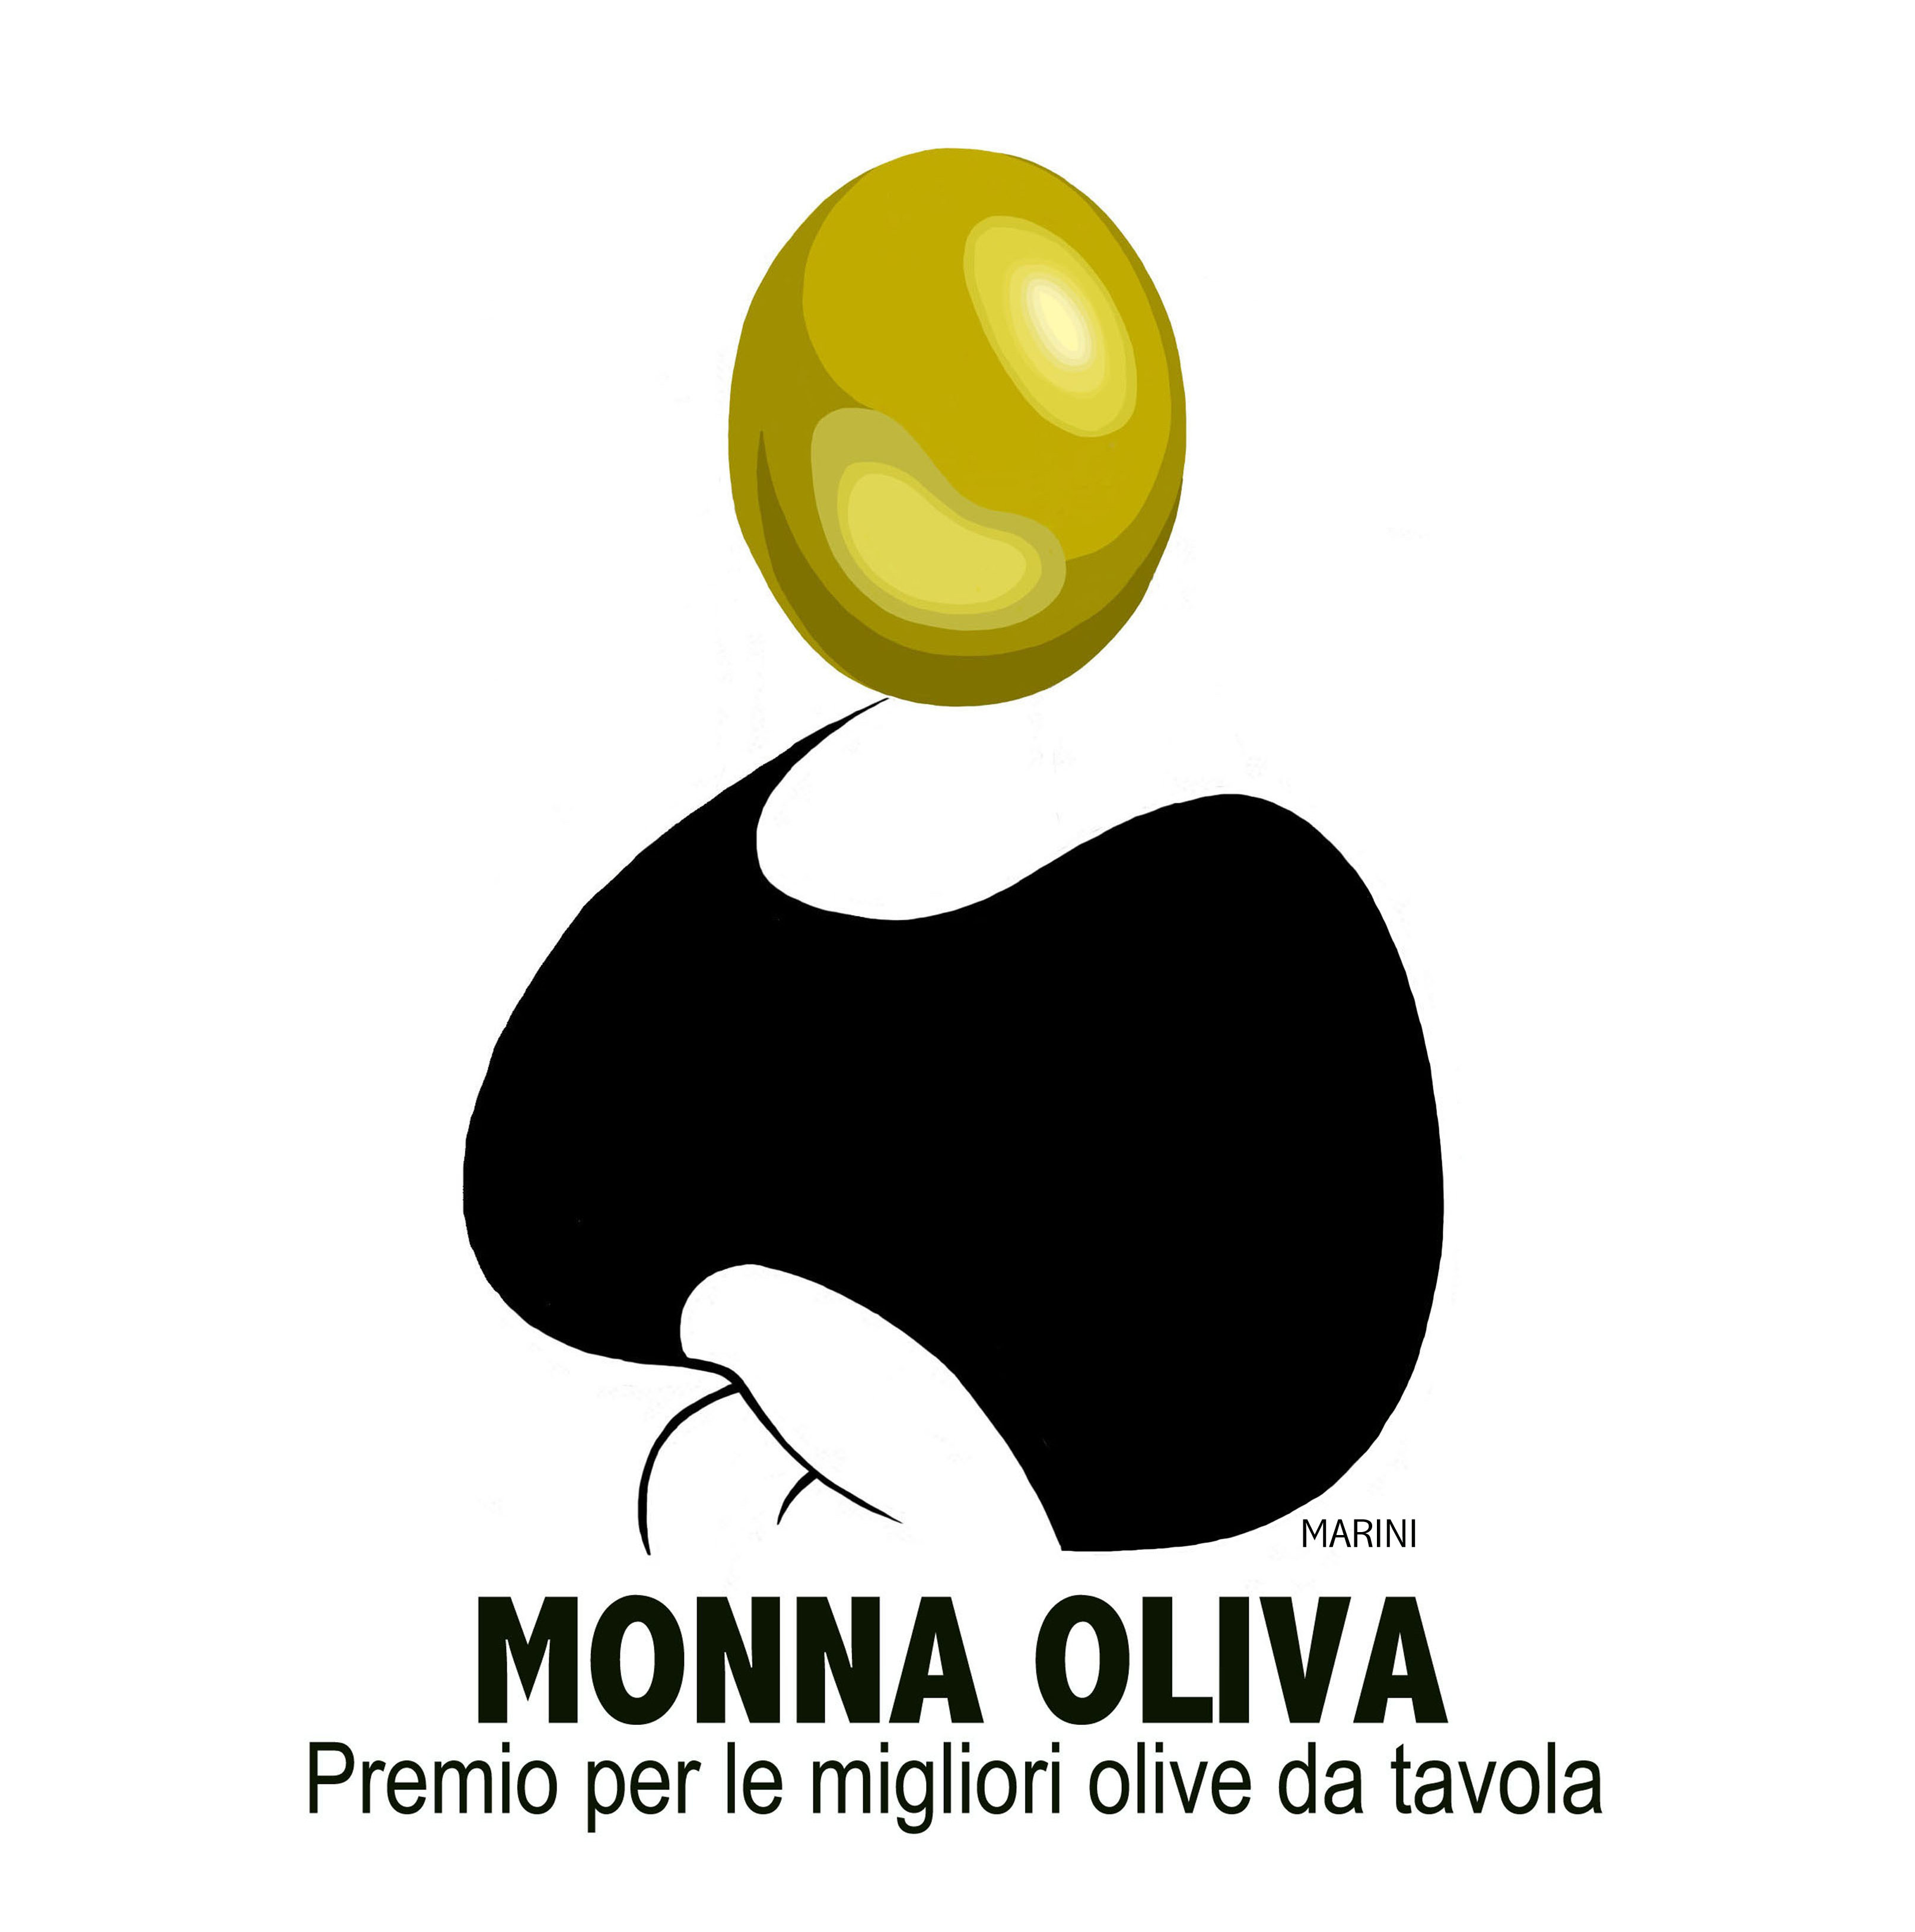 Arriva Monna Oliva, il Primo concorso nazionale per le migliori olive da tavola